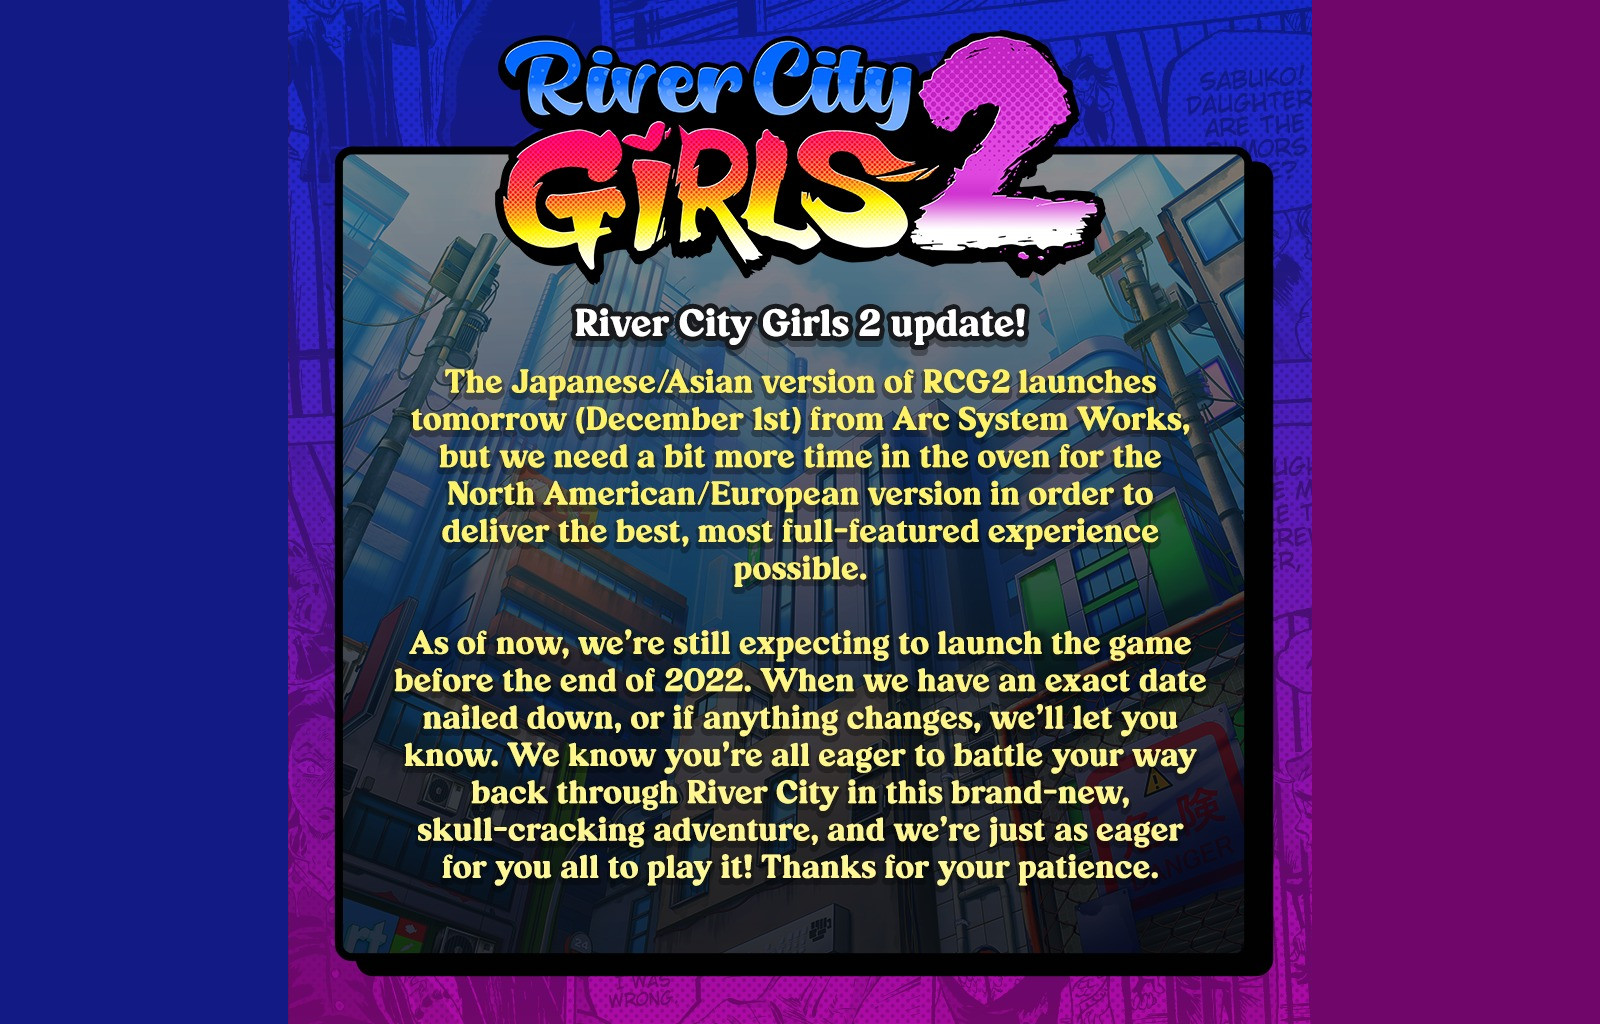 River City Girls 2 release date update